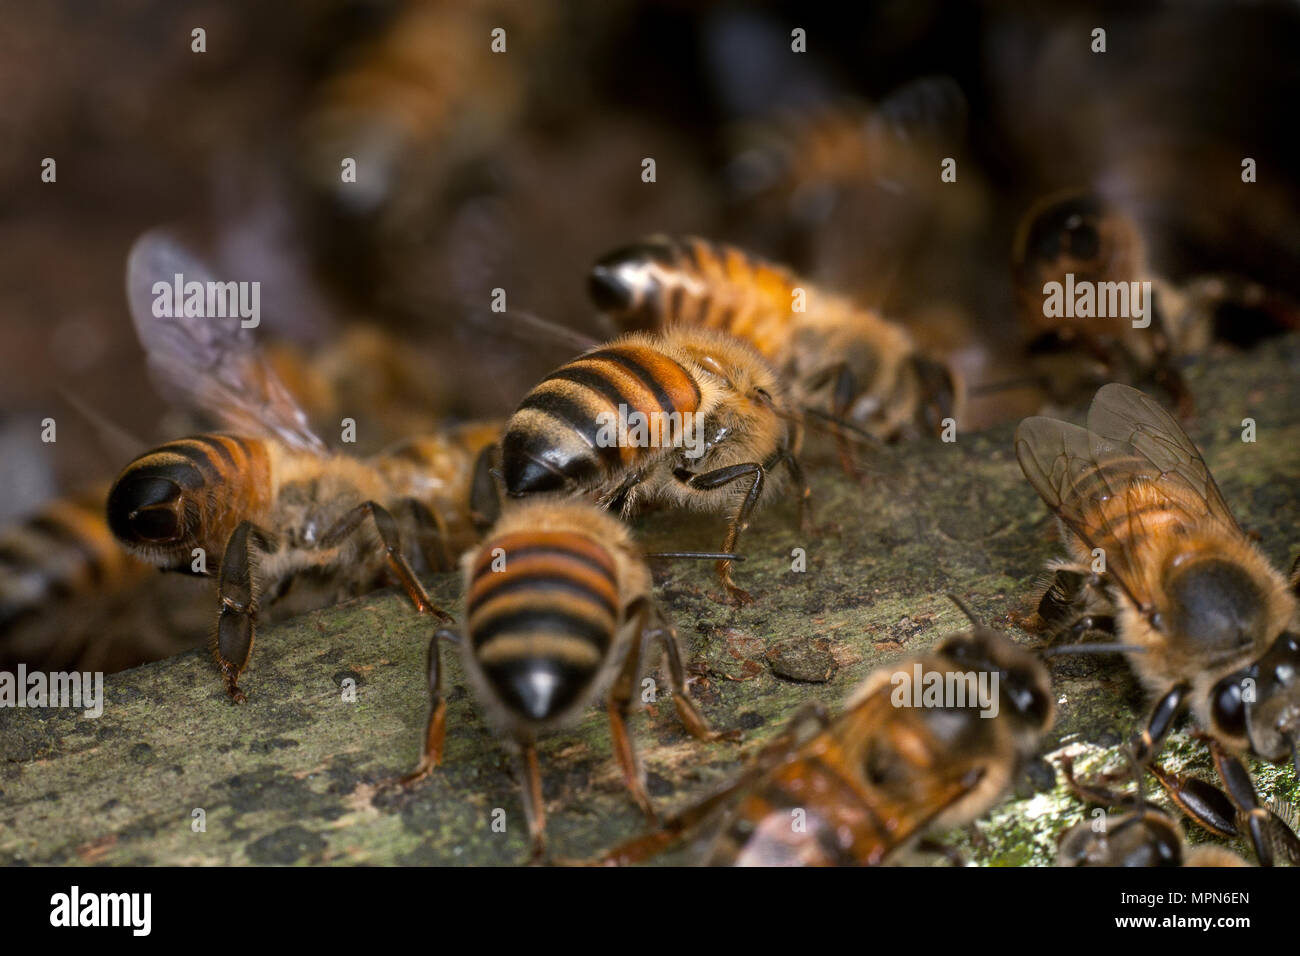 Les abeilles européennes sur l'entrée de la ruche (Apis mellifera) Banque D'Images